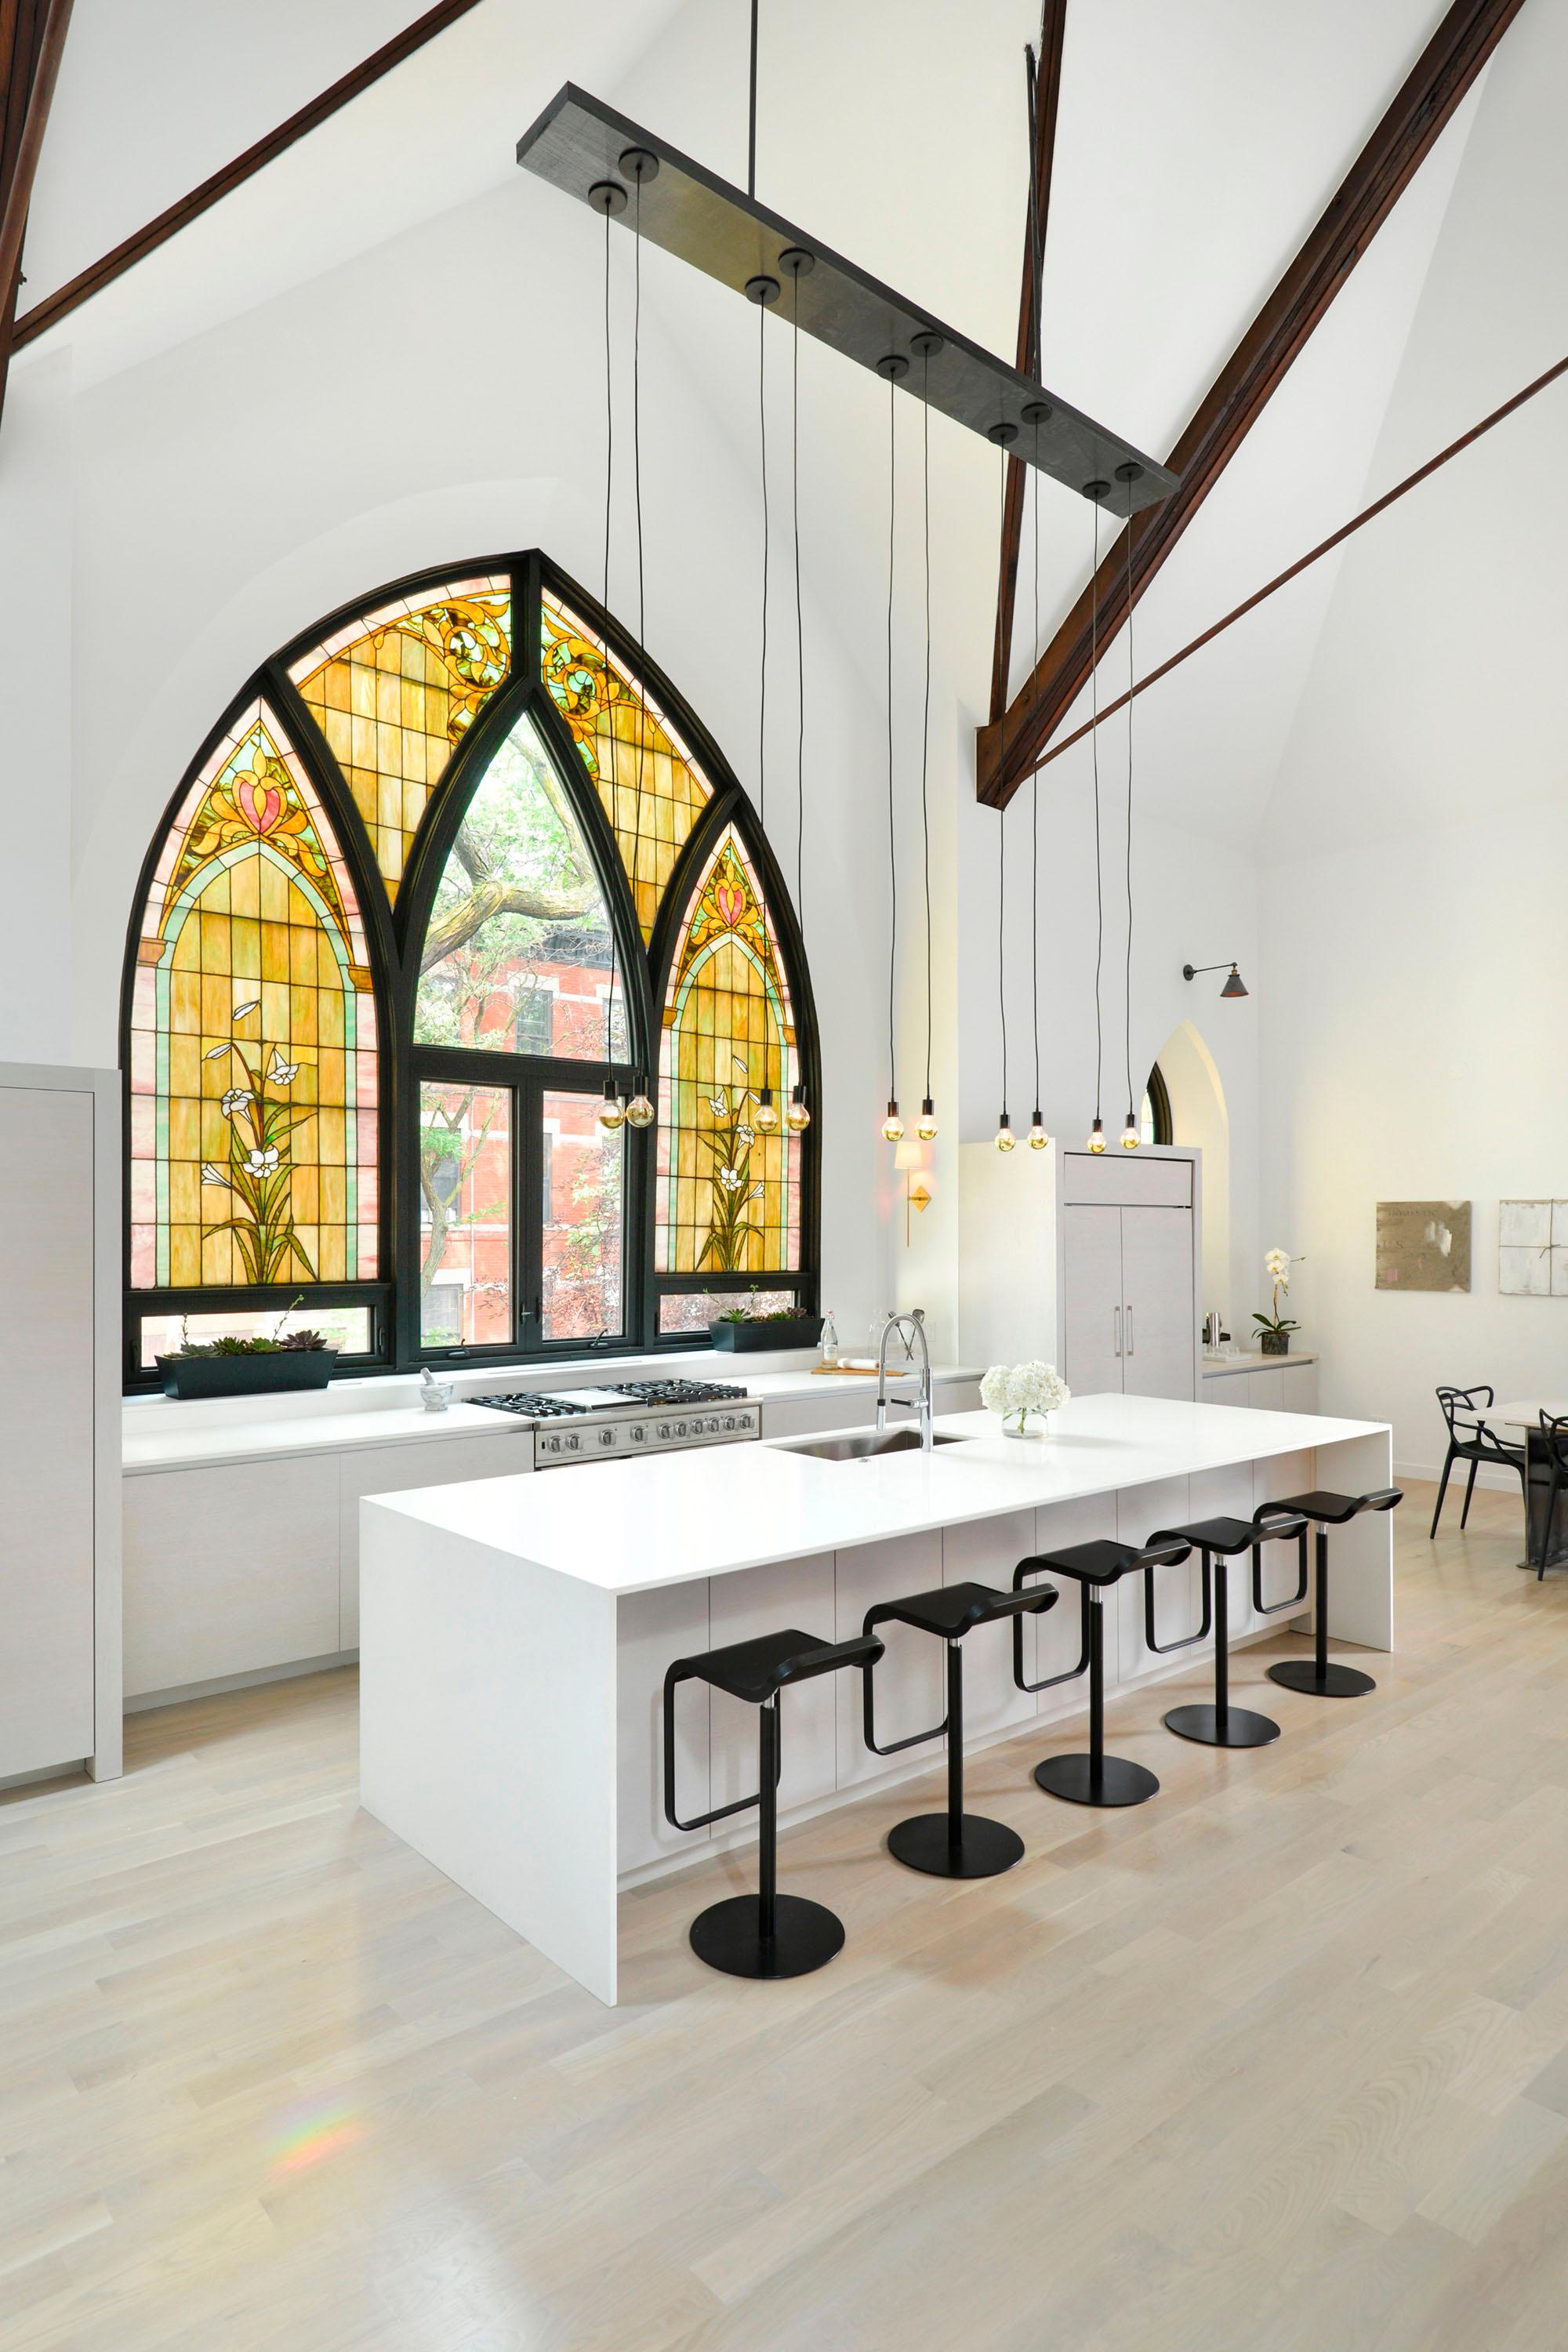 Offene Küche unter gotischen Kirchenfenstern #küche ©Scarfano Architects/Jim Tschetter